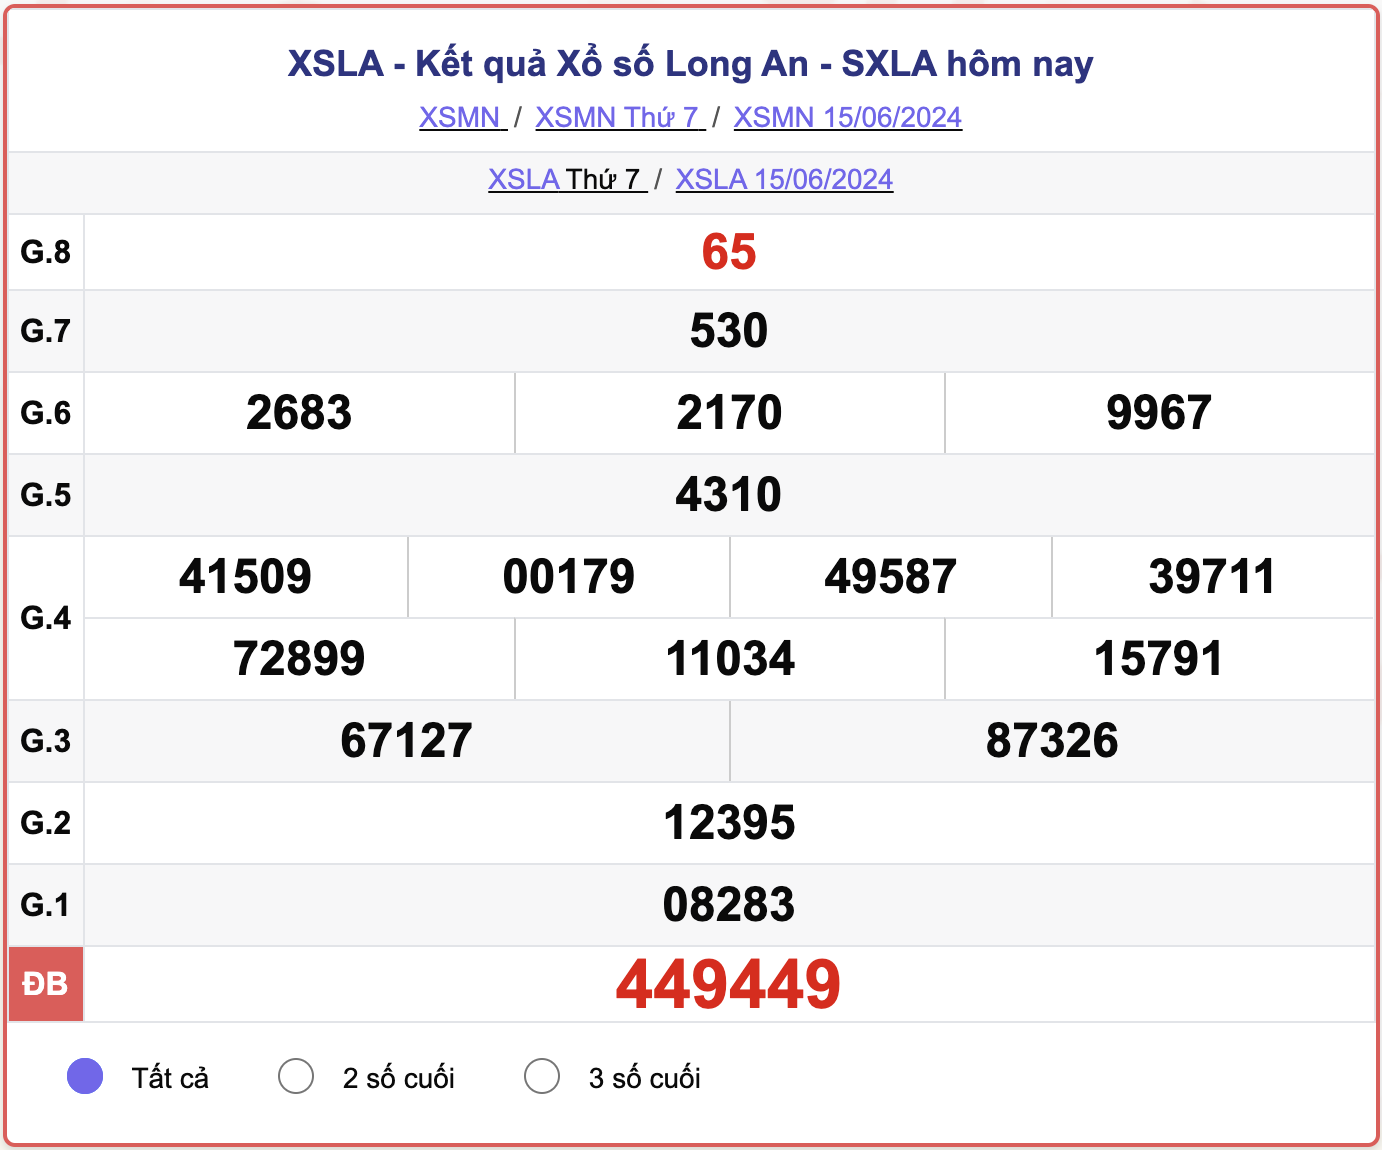 XSLA 15/6, kết quả xổ số Long An hôm nay 15/6/2024.